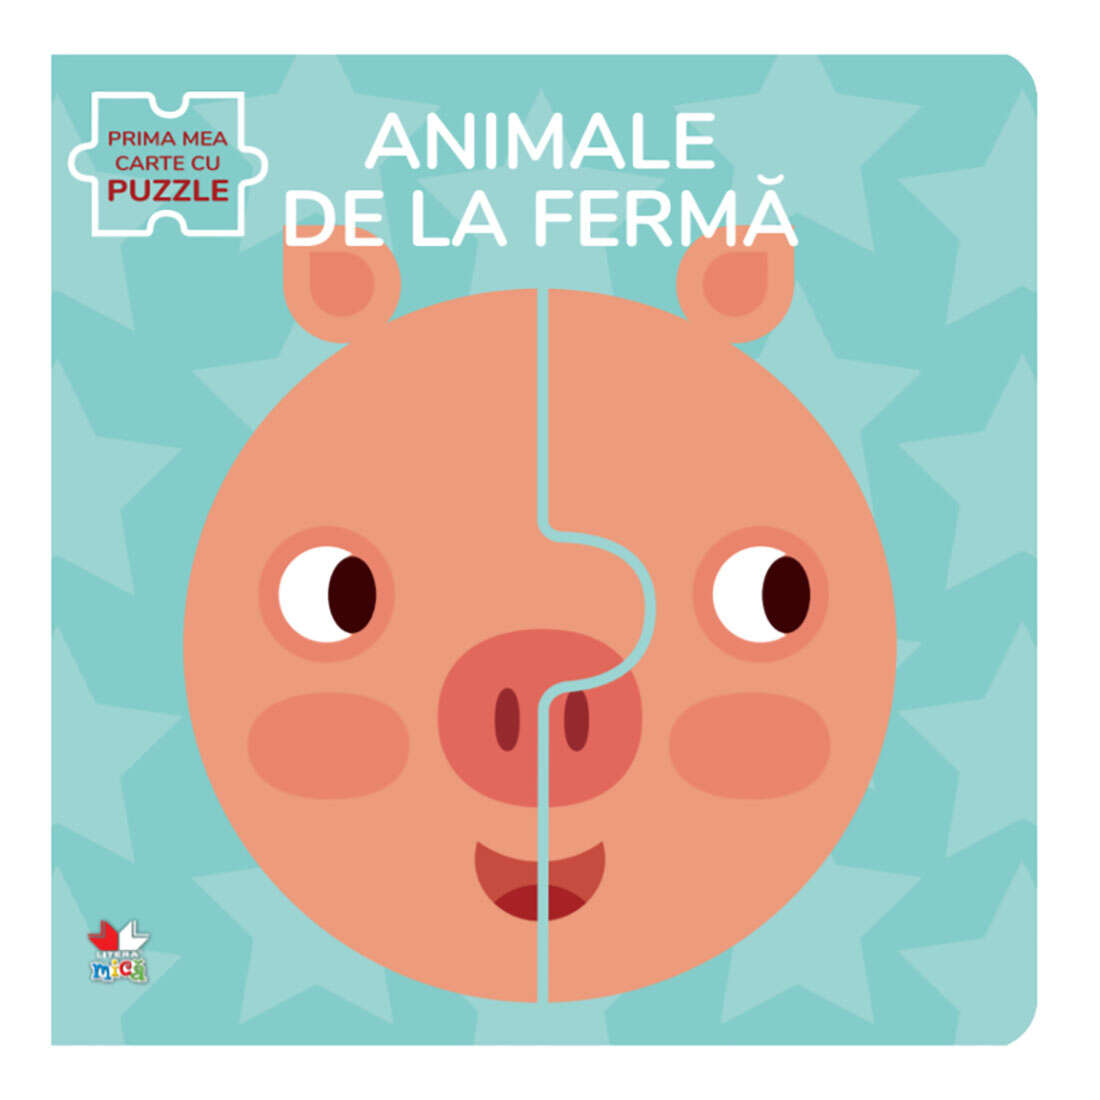 Carte Editura Litera, Animale de la ferma, Carte cu puzzle